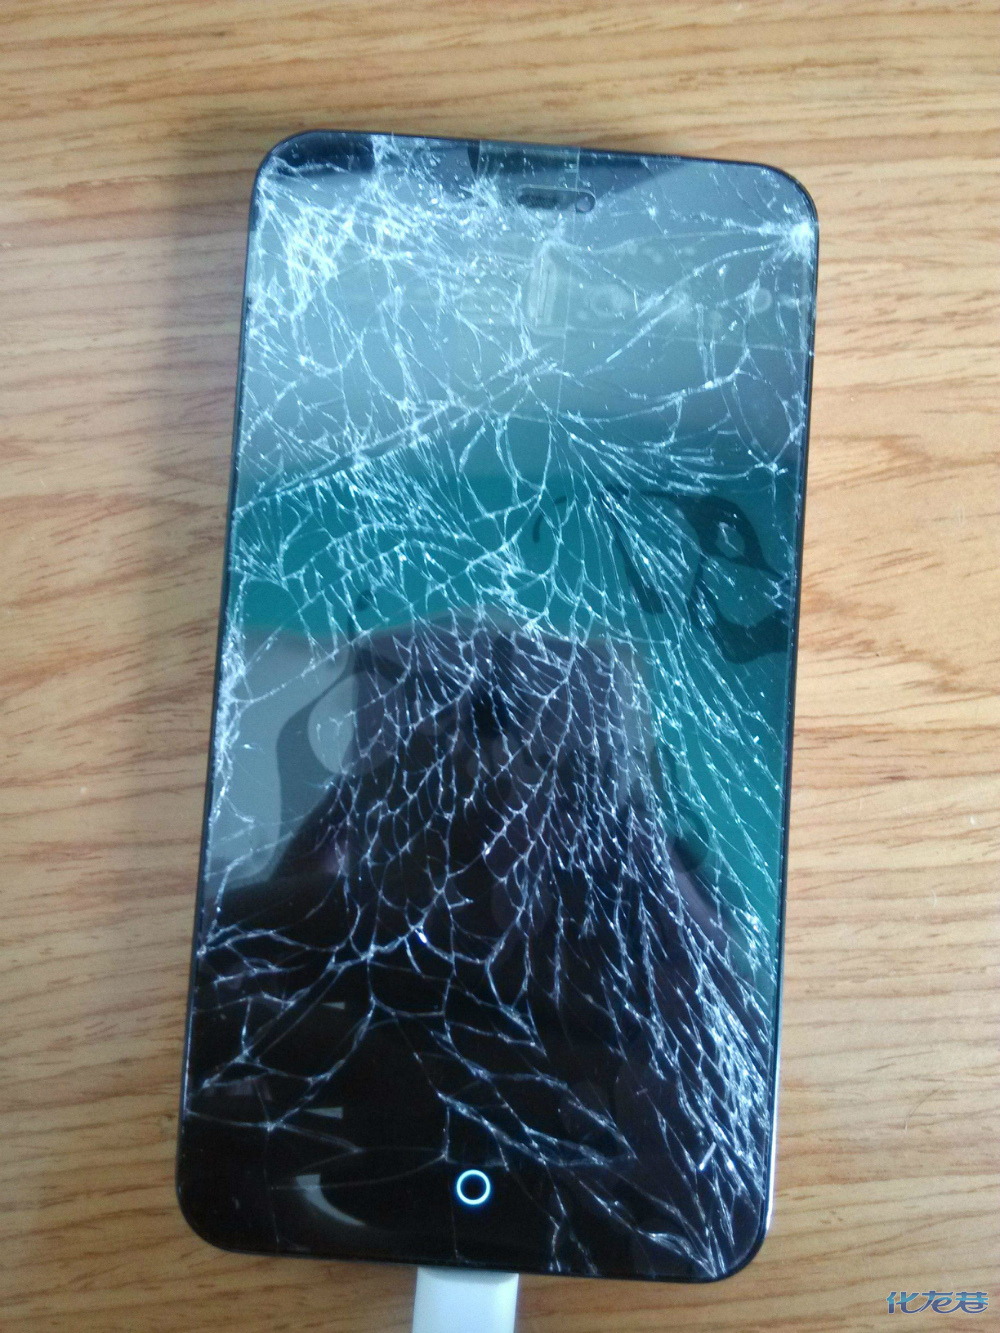 苹果新款才发布一天,老婆的安卓手机就摔爆了,你说这